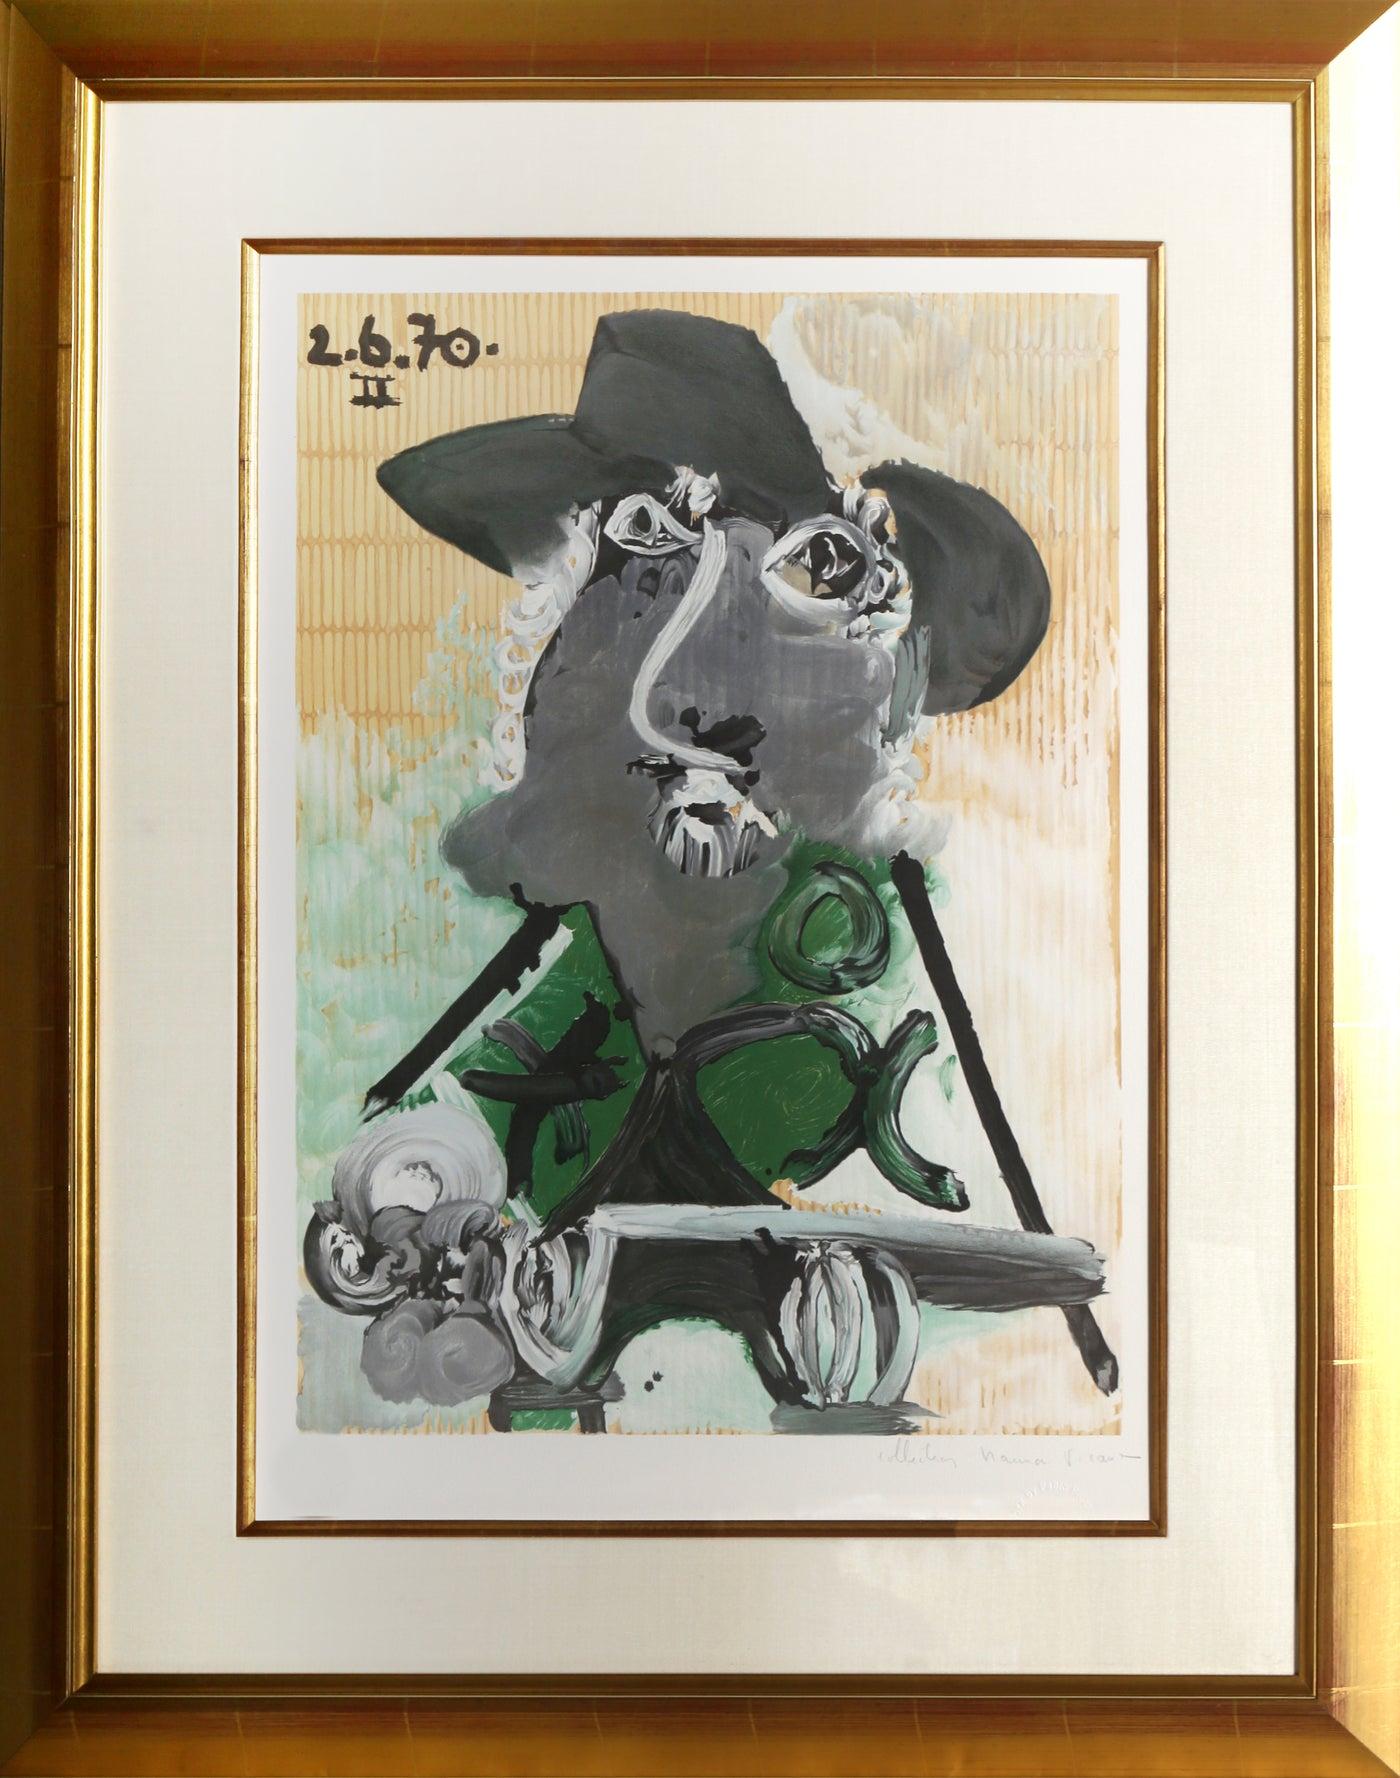 Une lithographie provenant de la Collection SALE de Marina Picasso d'après le tableau de Pablo Picasso "Portrait d'Homme au Chapeau".  La peinture originale a été achevée en 1970. Dans les années 1970, après la mort de Picasso, Marina Picasso, sa